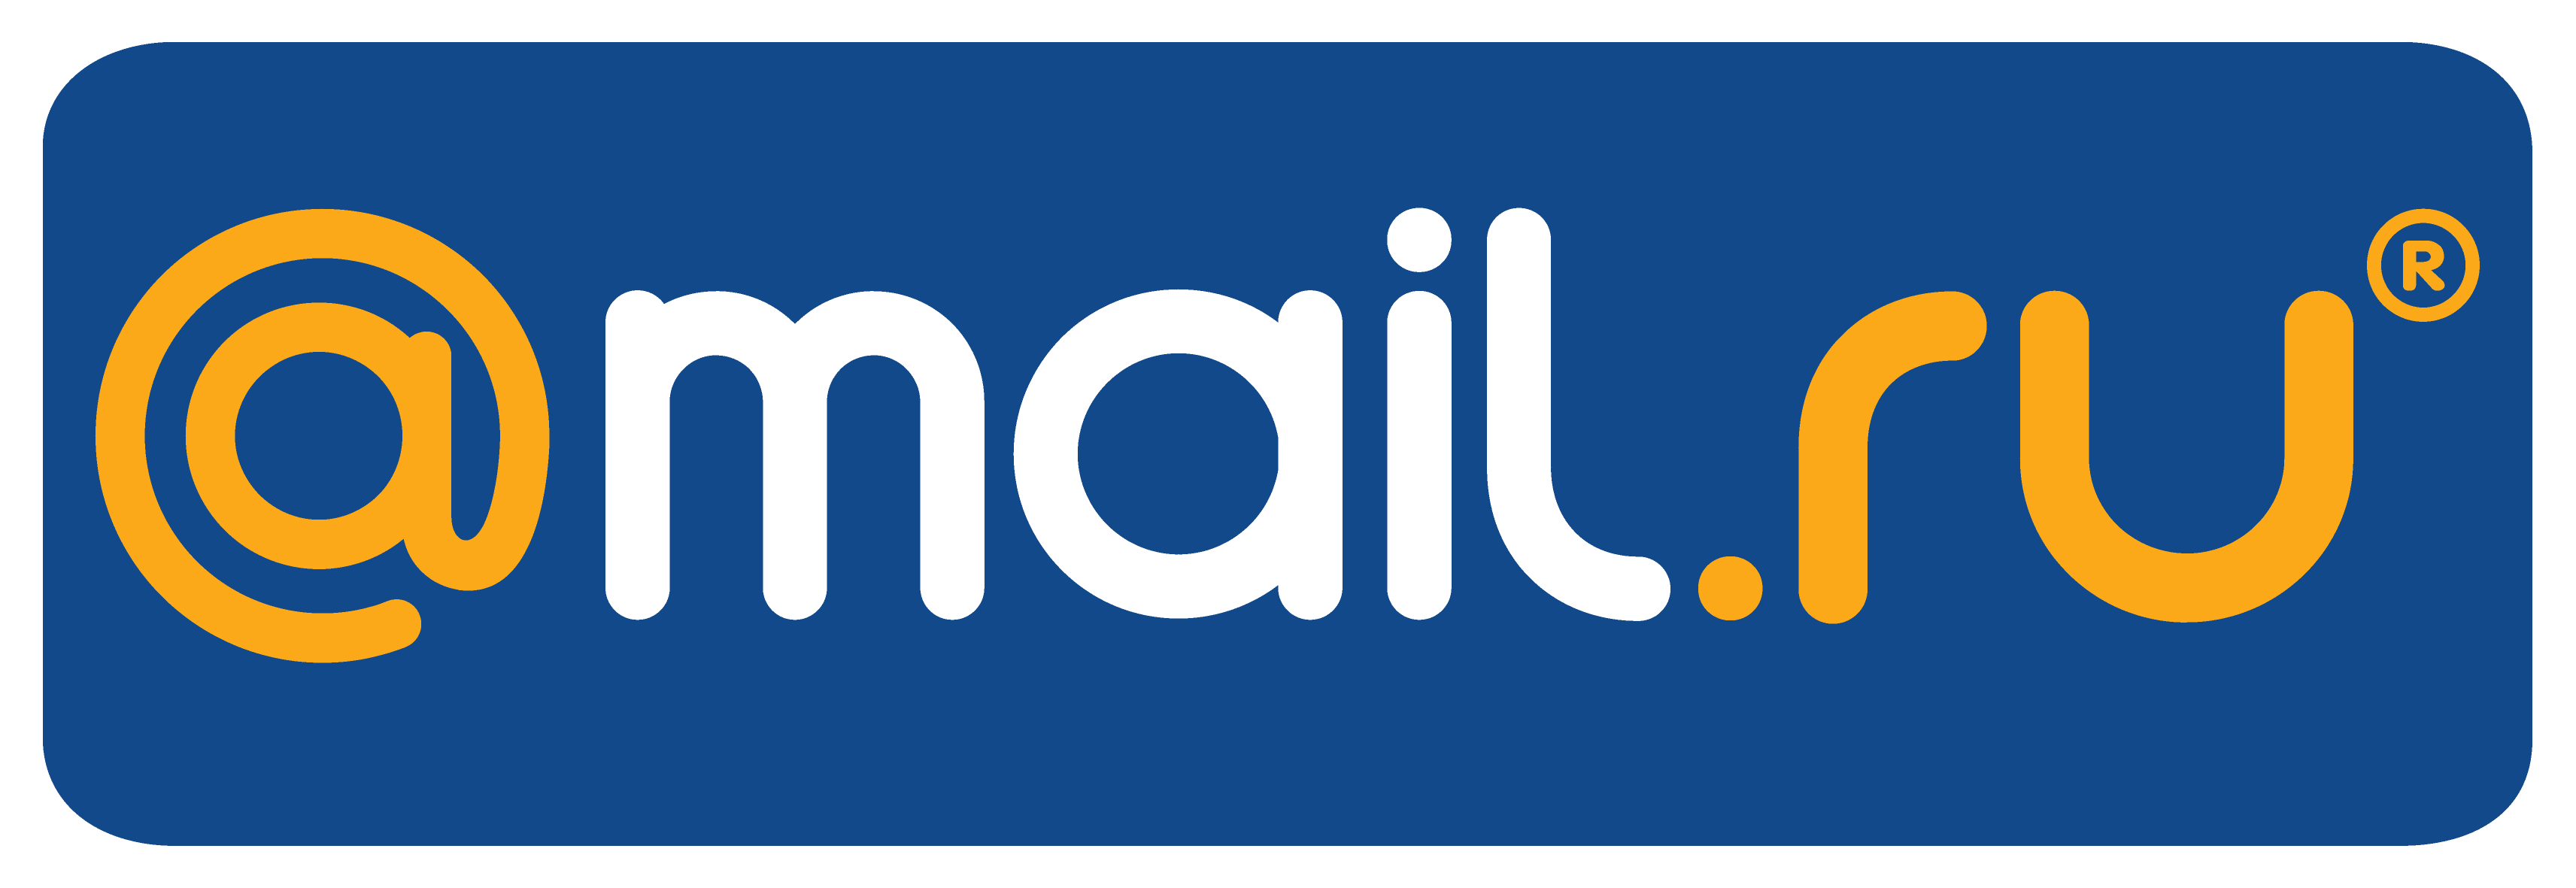 Peni ru. Mail. Mail.ru лого. Почта майл. Логотип мейл ру.